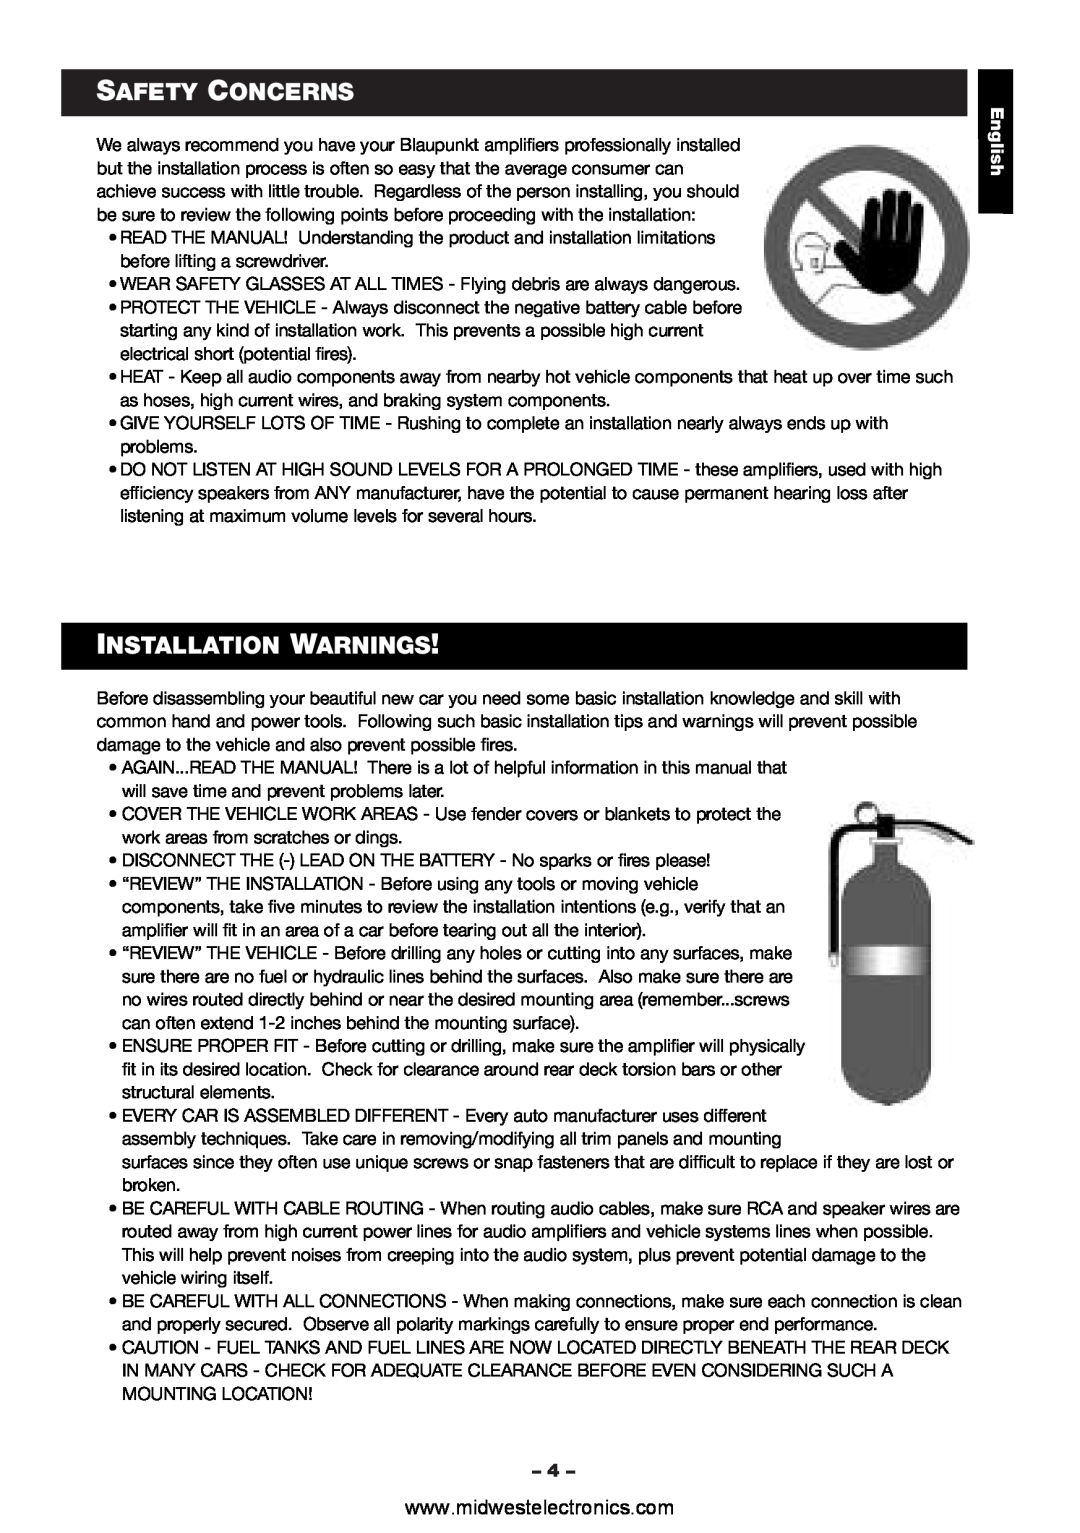 Blaupunkt VA4100 manual Safety Concerns, Installation Warnings, English 